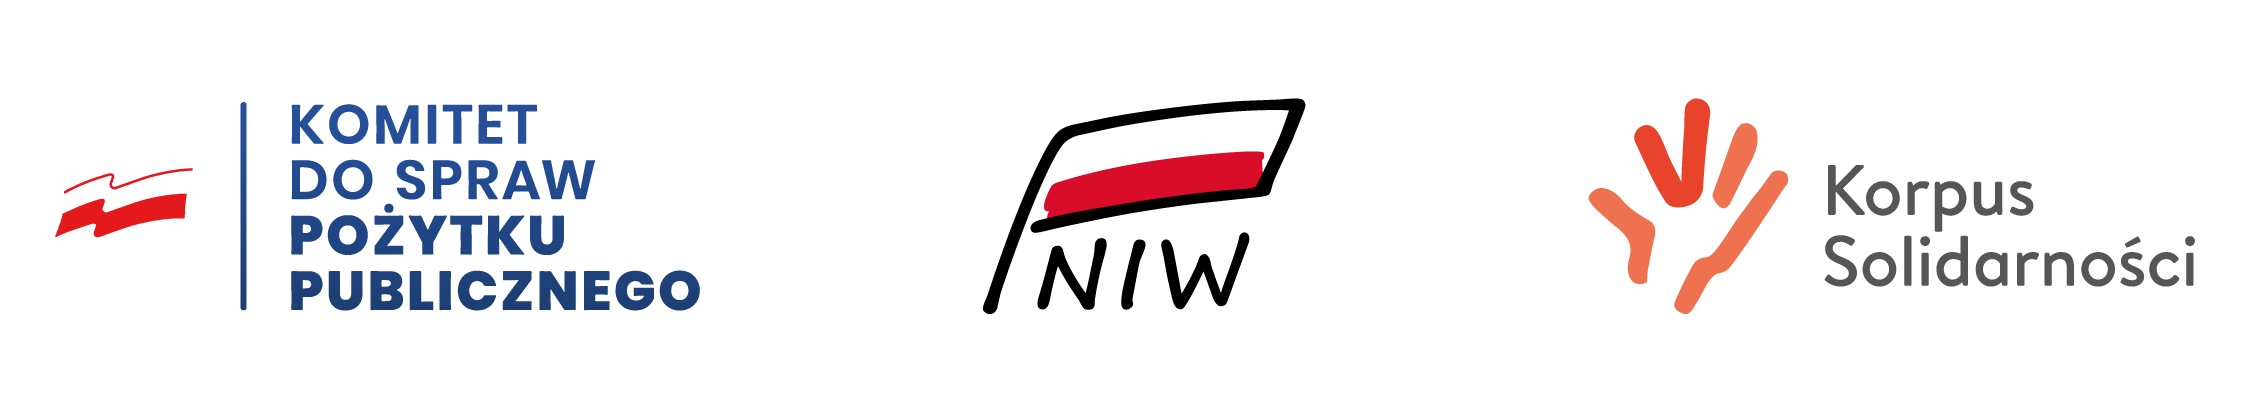 Plik graficzny. Załącznik do projektu „Migiem na Wolontariat”. Trzy loga, od lewej: logo z niebieskim napisem „Komitet do spraw pożytku publicznego” oraz — oddzielona od napisu niebieską pionową kreską — flaga polski. Następnie logo: czarny kontur flagi z czerwoną dolną połową, poniżej czarny napis: NIW. Następnie logo pomarańczowo-czerwona grafika przypominająca otwarta dłoń, a obok czarny napis: Korpus Solidarnościowy.